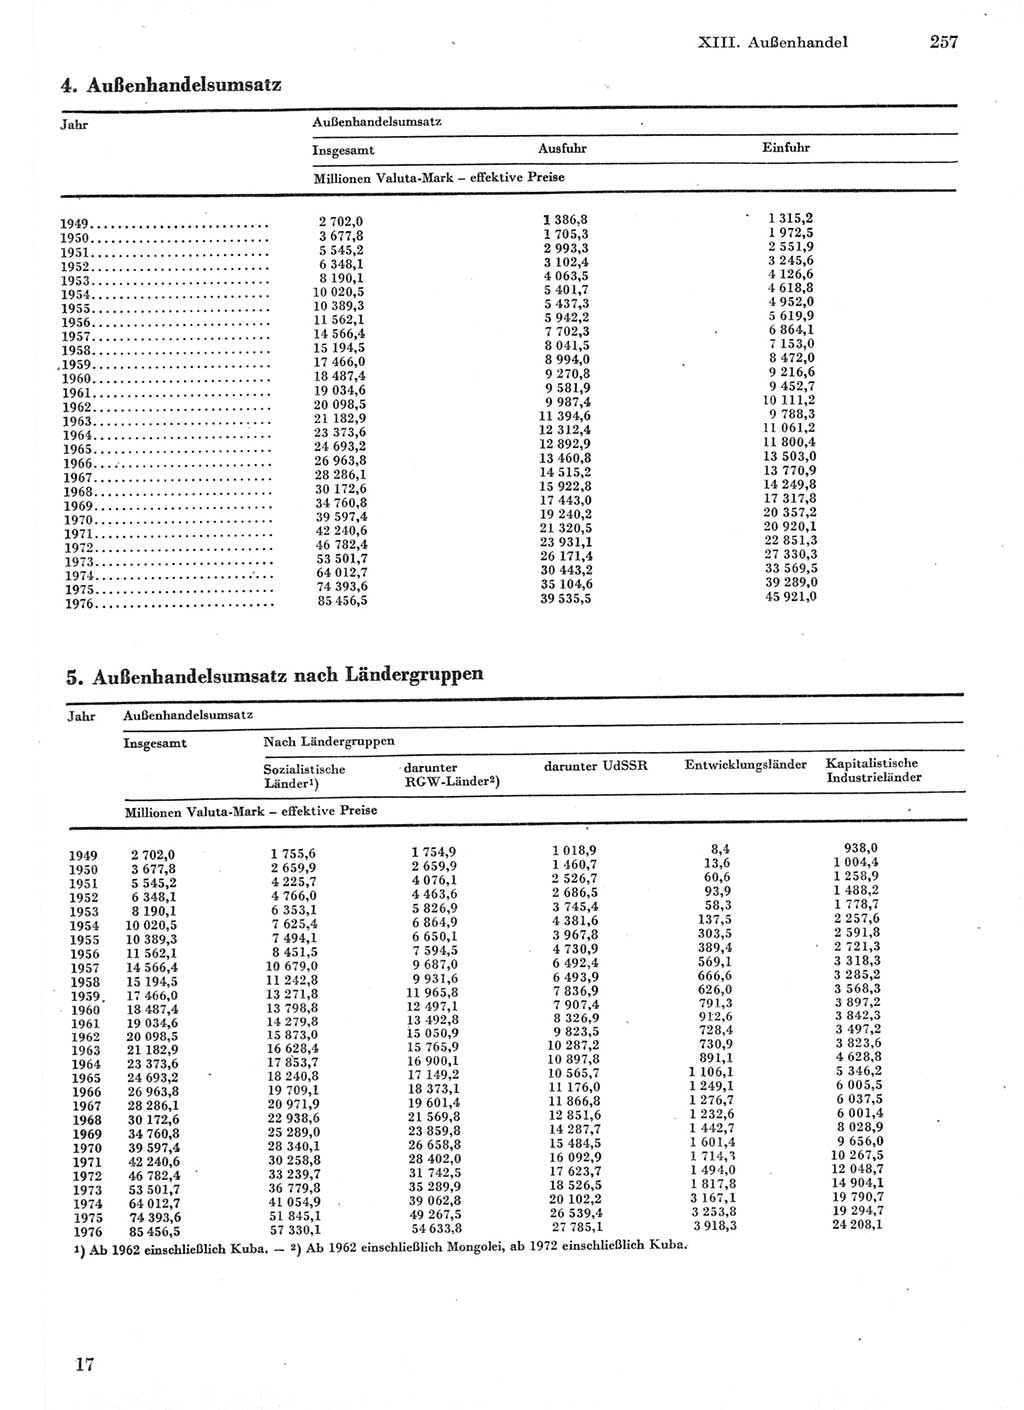 Statistisches Jahrbuch der Deutschen Demokratischen Republik (DDR) 1977, Seite 257 (Stat. Jb. DDR 1977, S. 257)